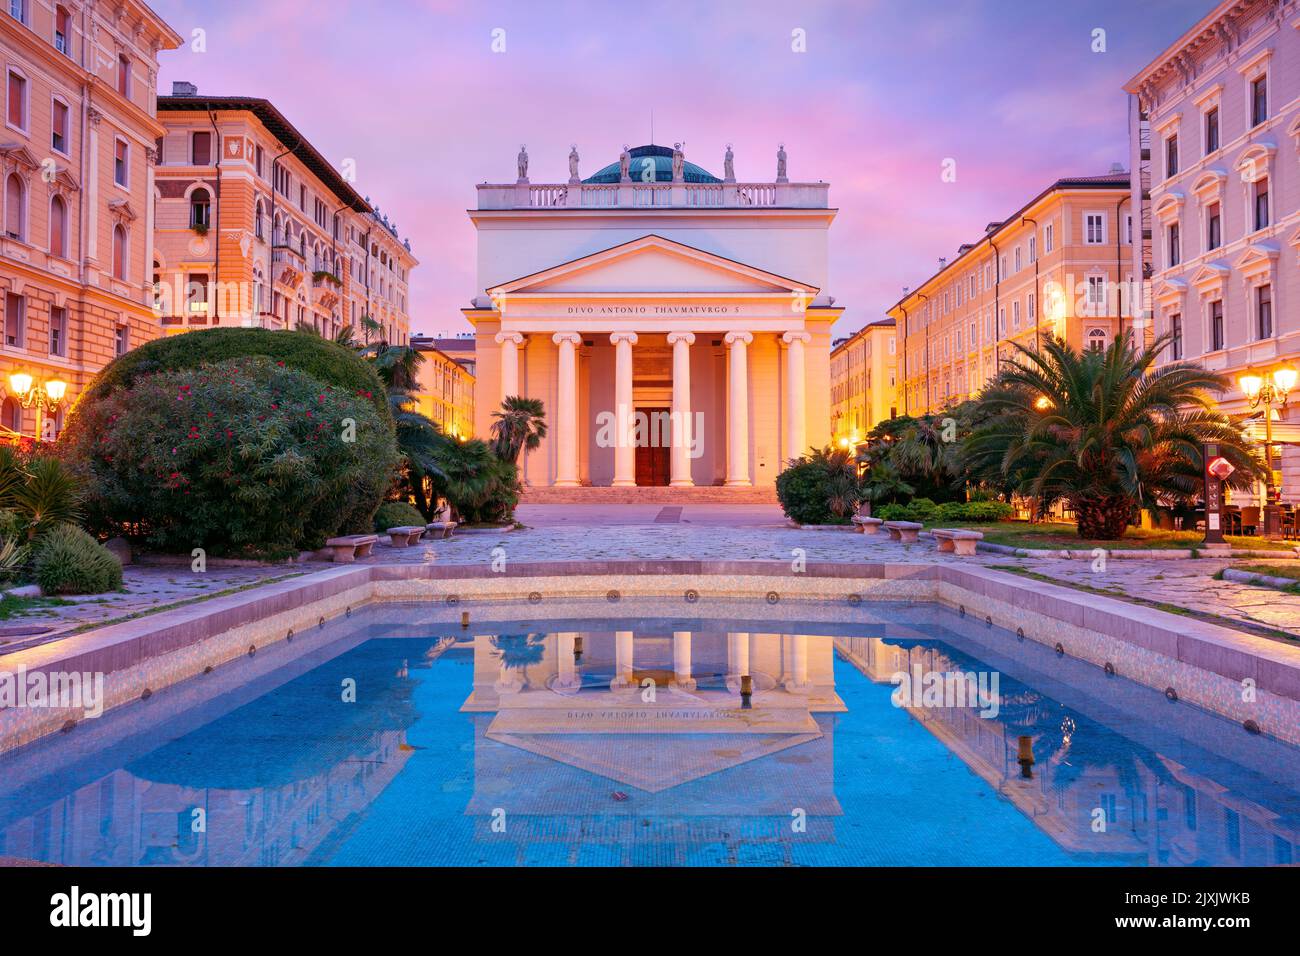 Trieste, Italie. Image de paysage urbain du centre-ville de Trieste, Italie au lever du soleil. Banque D'Images